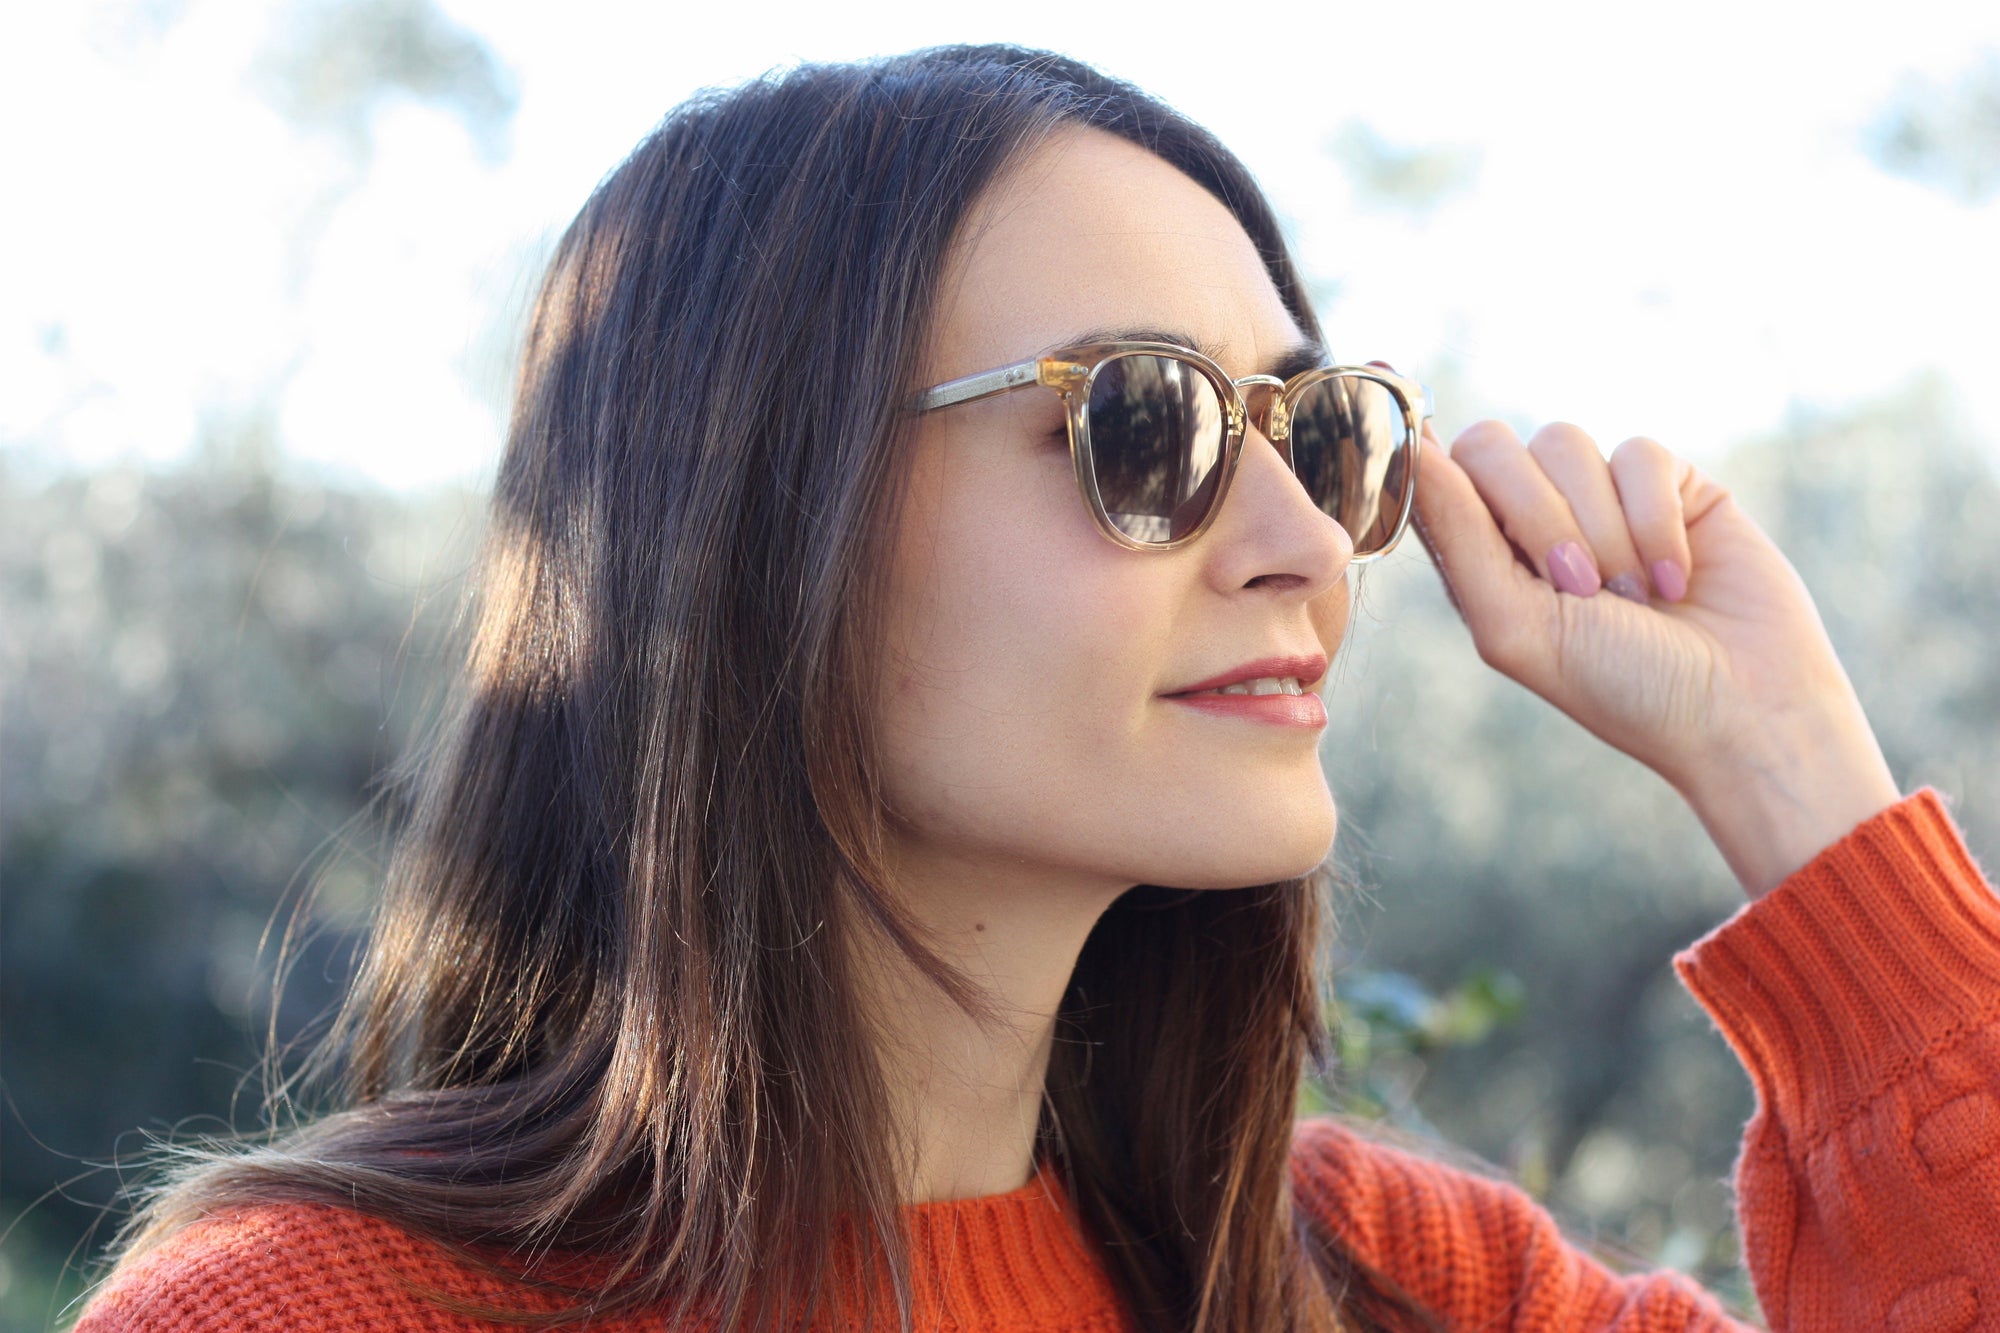 Does anti-glare Protect eyes? | KOALAEYE OPTICAL